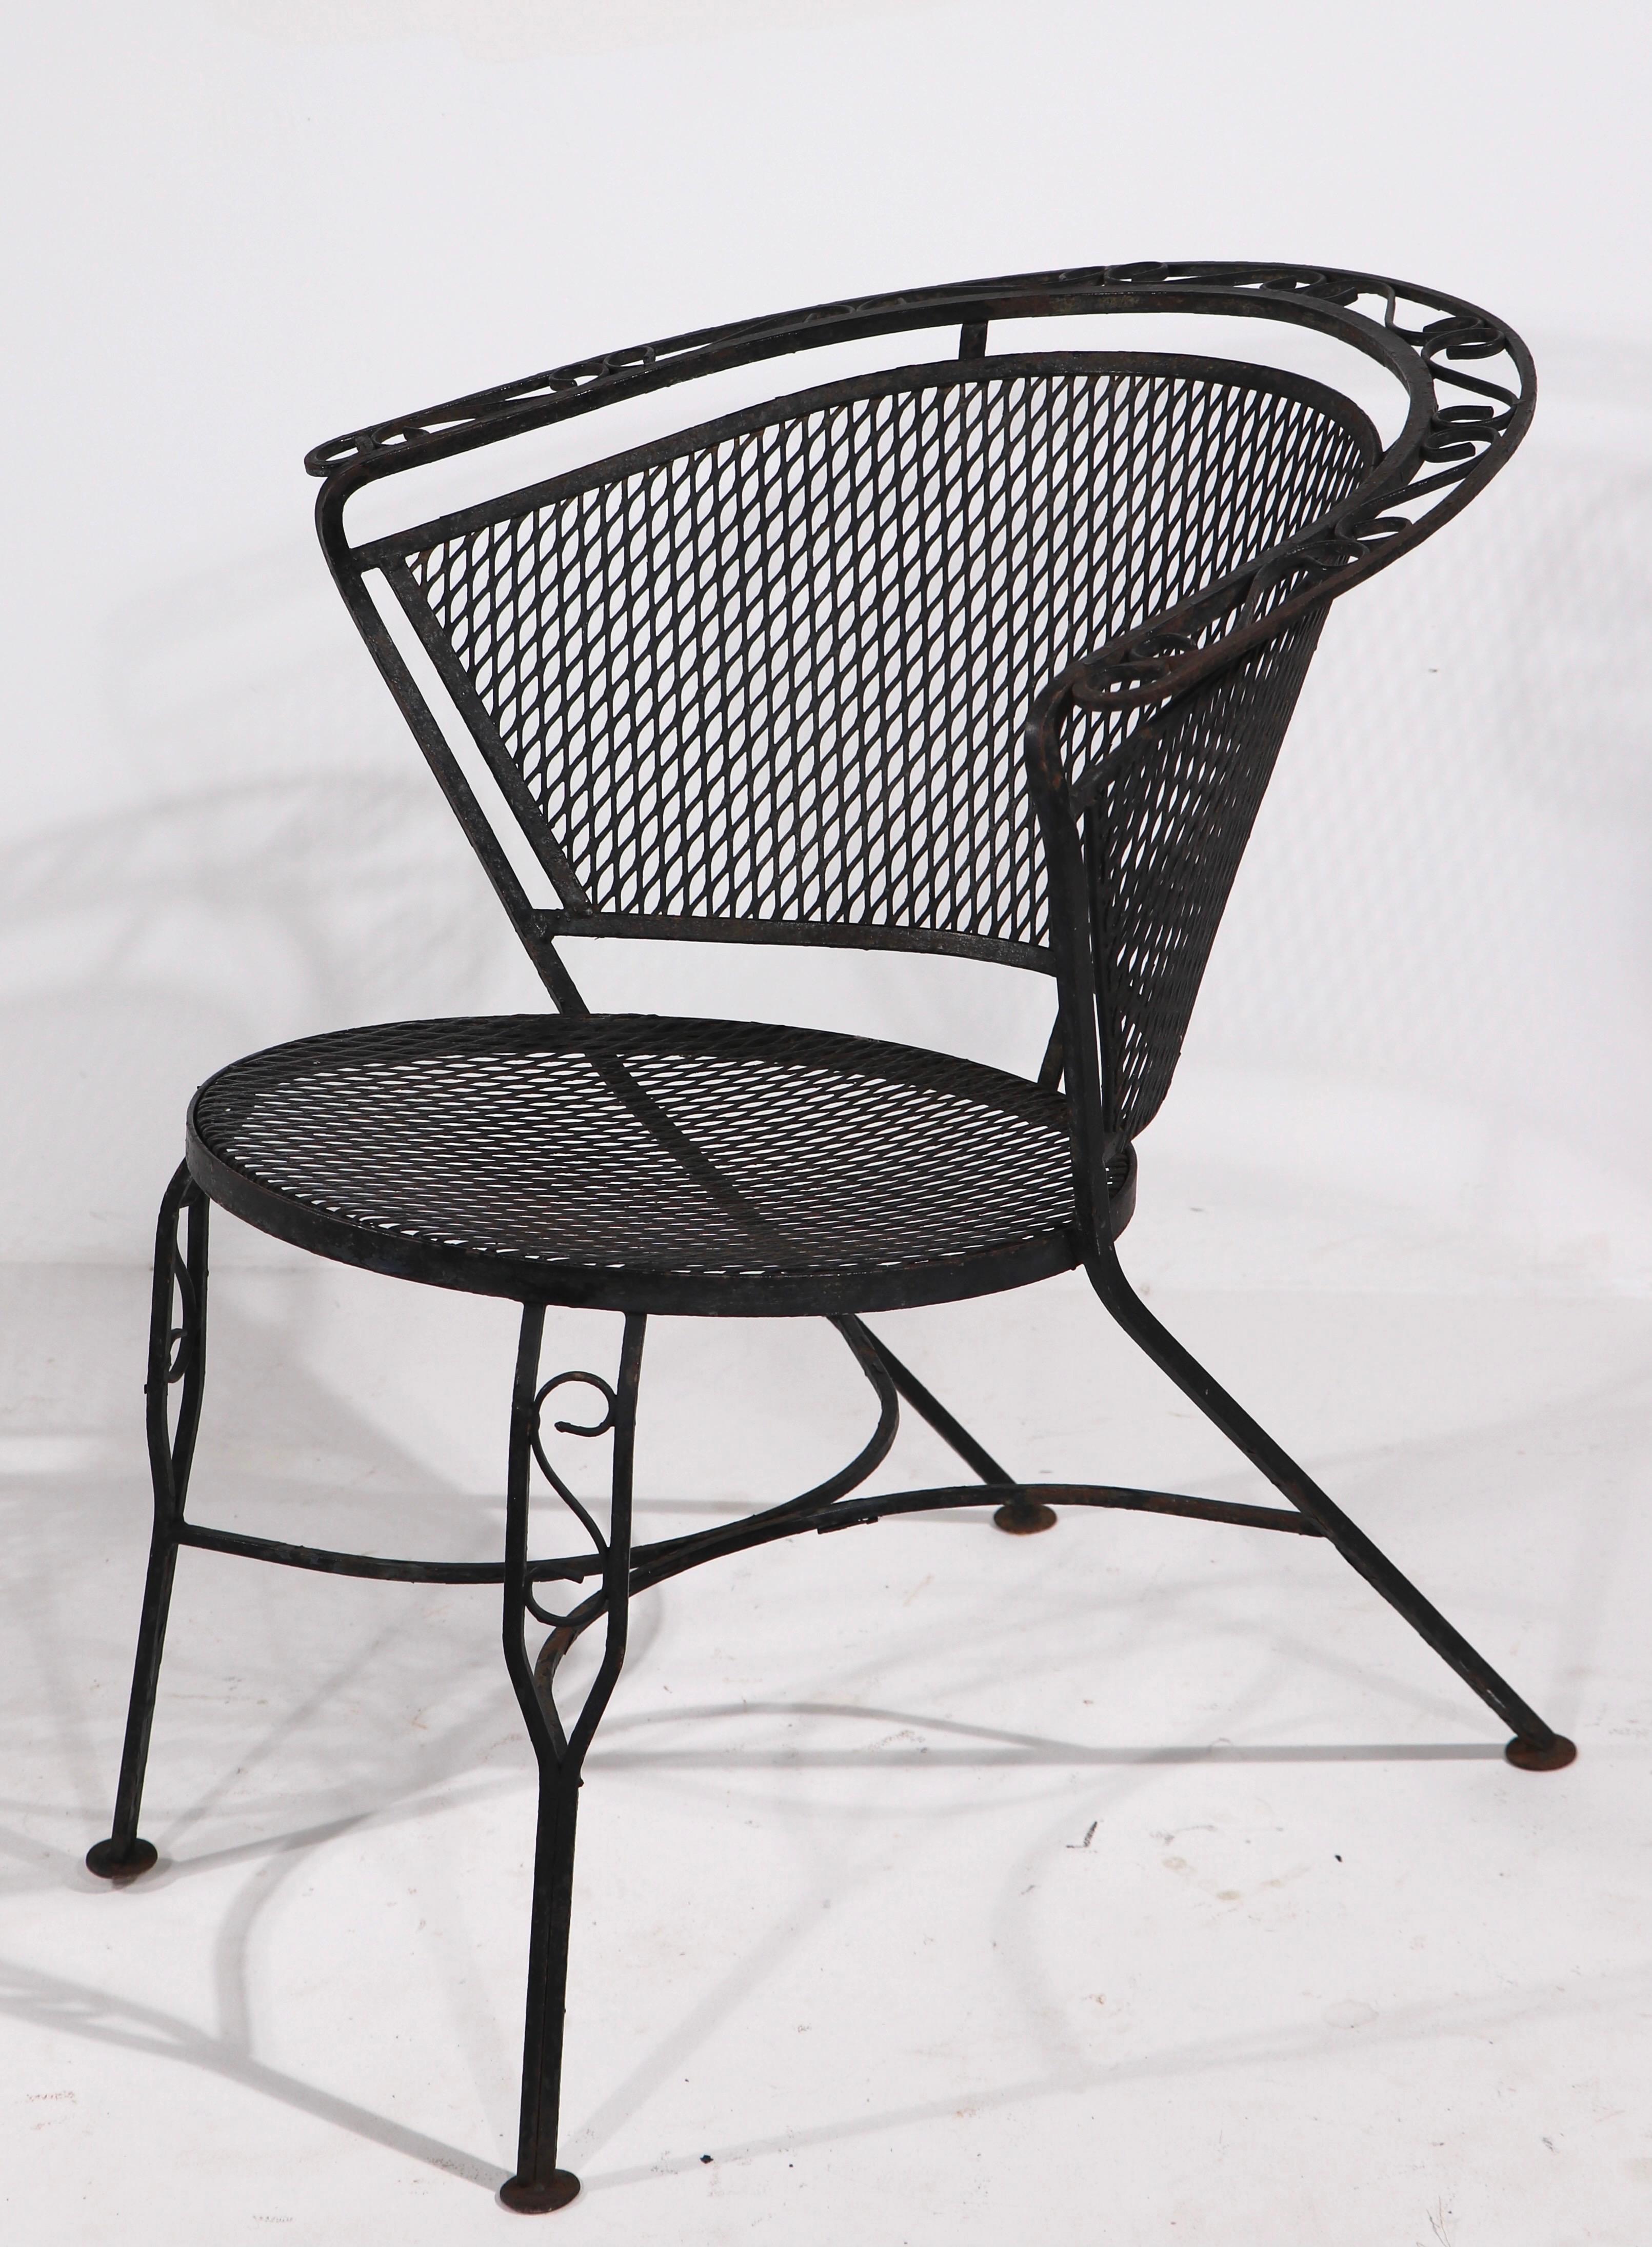 Chic et élégante paire de chaises longues en fer forgé pour jardin, patio, piscine, attribuée à Salterini. Les chaises ont des cadres en fer forgé, avec des sièges et des dossiers en maille métallique. Les deux sont en bon état d'origine, sans